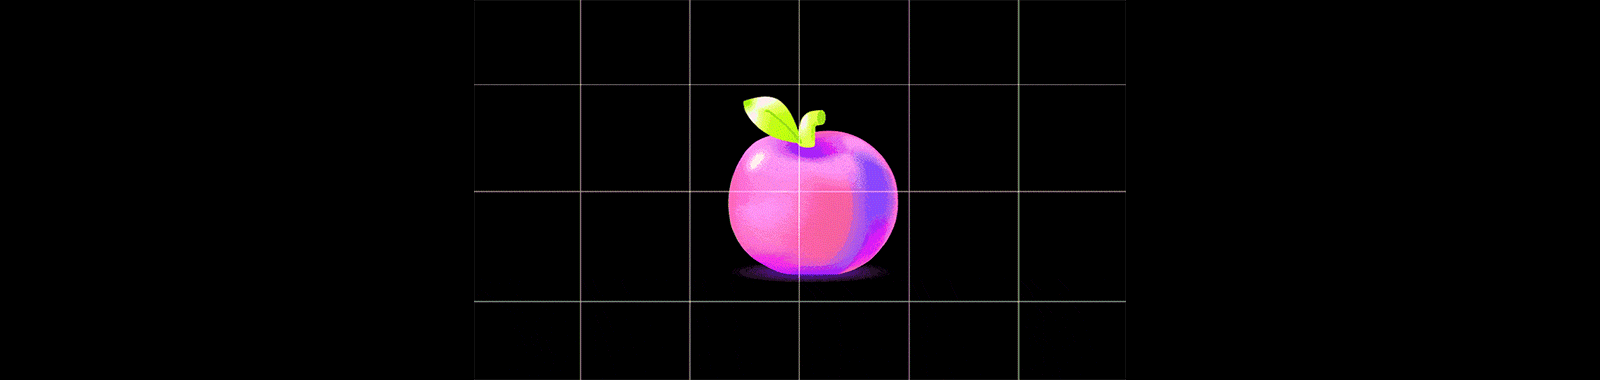 apple-glitch-digiday-gif_eye